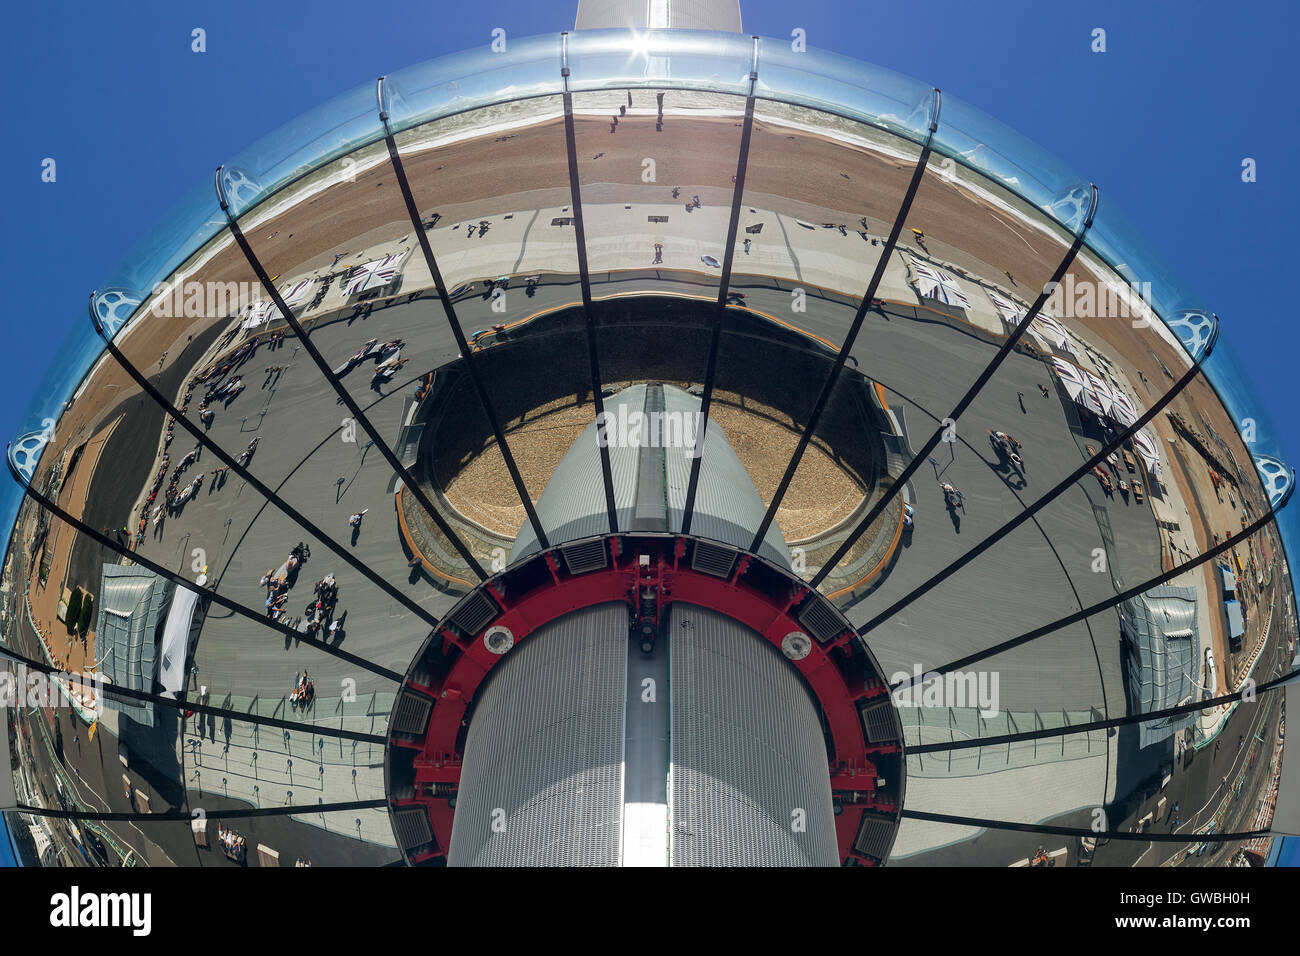 Detailansicht der i360 Pod von unterhalb. I360, Brighton, Vereinigtes Königreich. Architekt: Marks Barfield Architects, 2016. Stockfoto